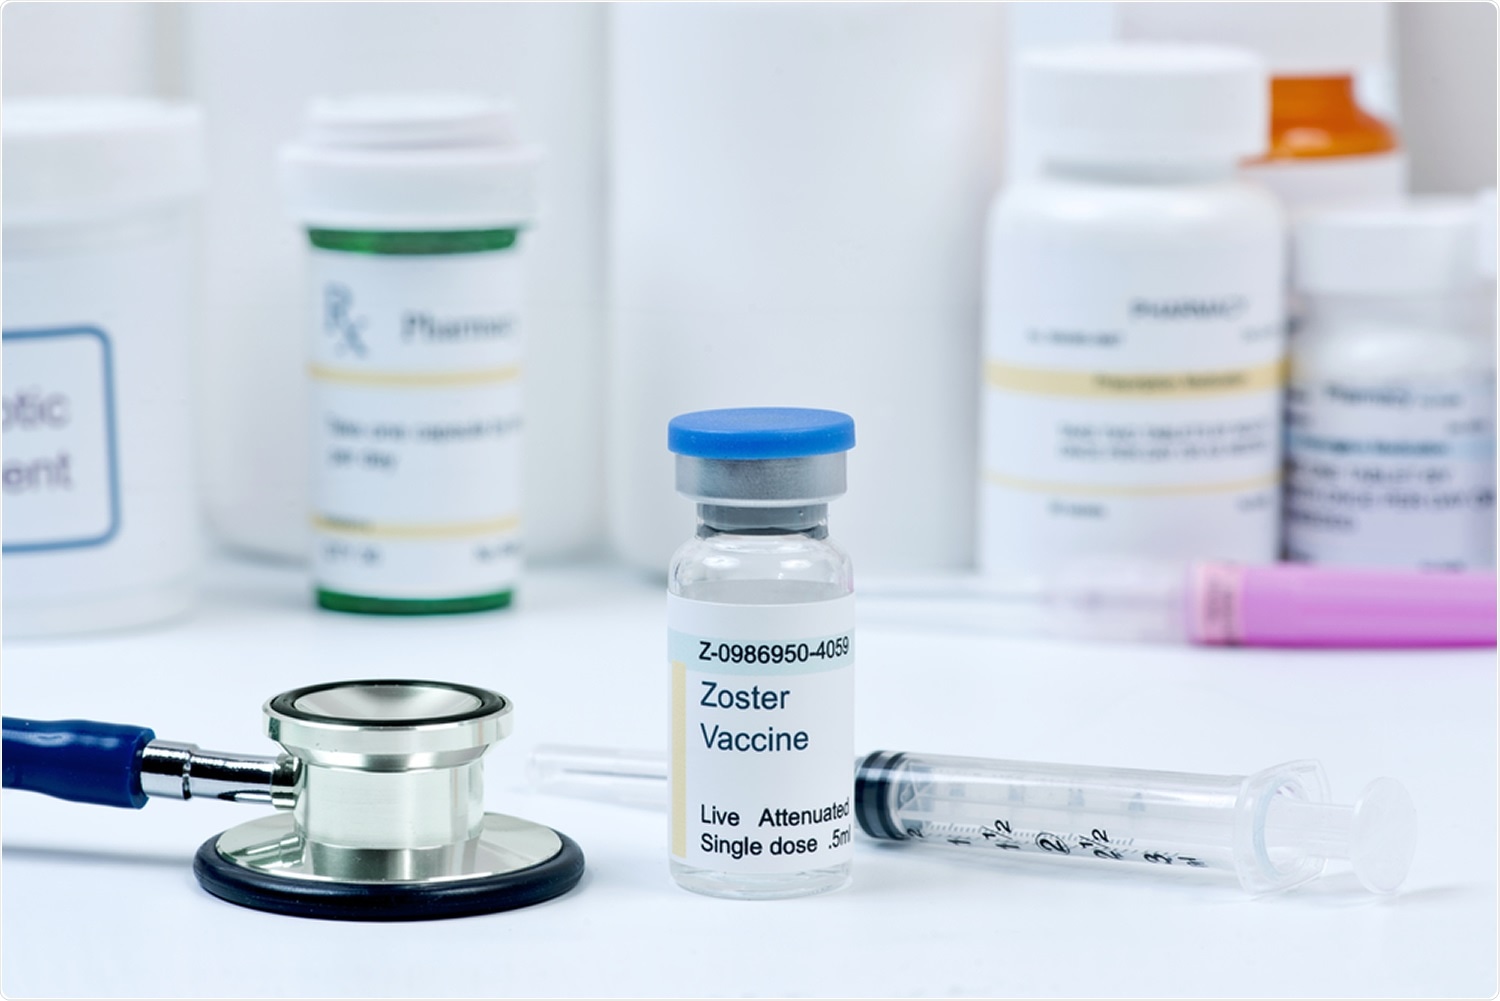 Estudo: Vacina adjuvanted de recombinação do zoster e risco reduzido do diagnóstico COVID-19 e da hospitalização em adultos mais velhos. Crédito de imagem: MedstockPhotos/Shutterstock